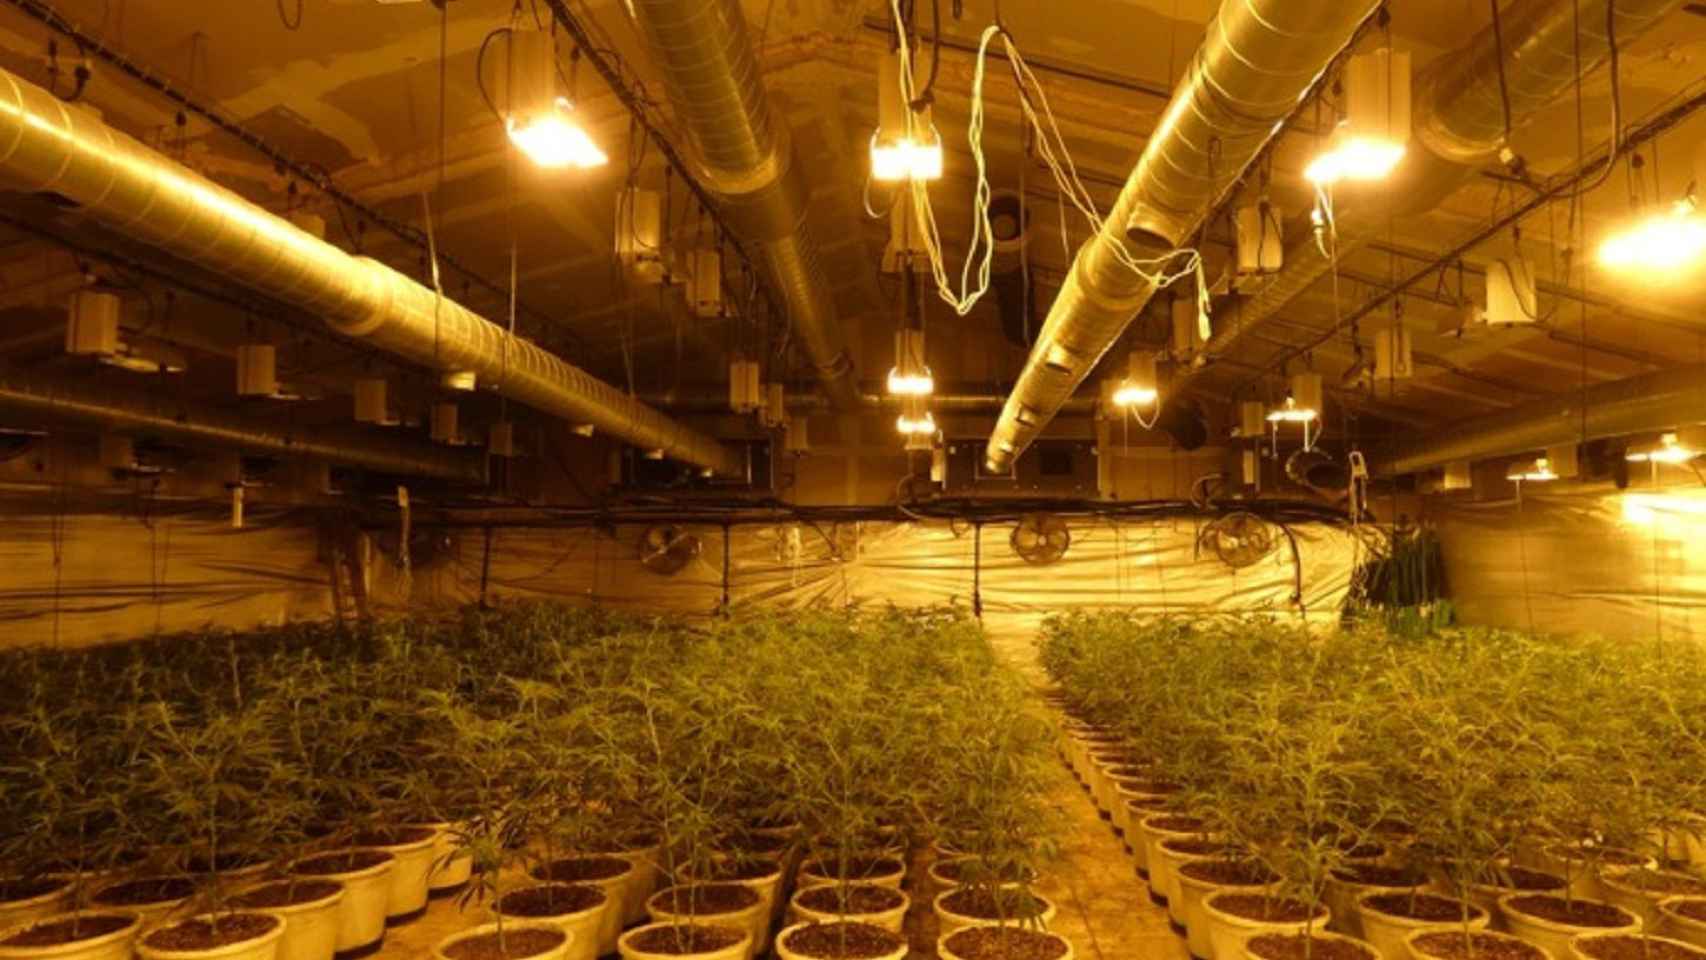 Las más de 500 plantas de marihuana incautadas en Badalona / MOSSOS D'ESQUADRA